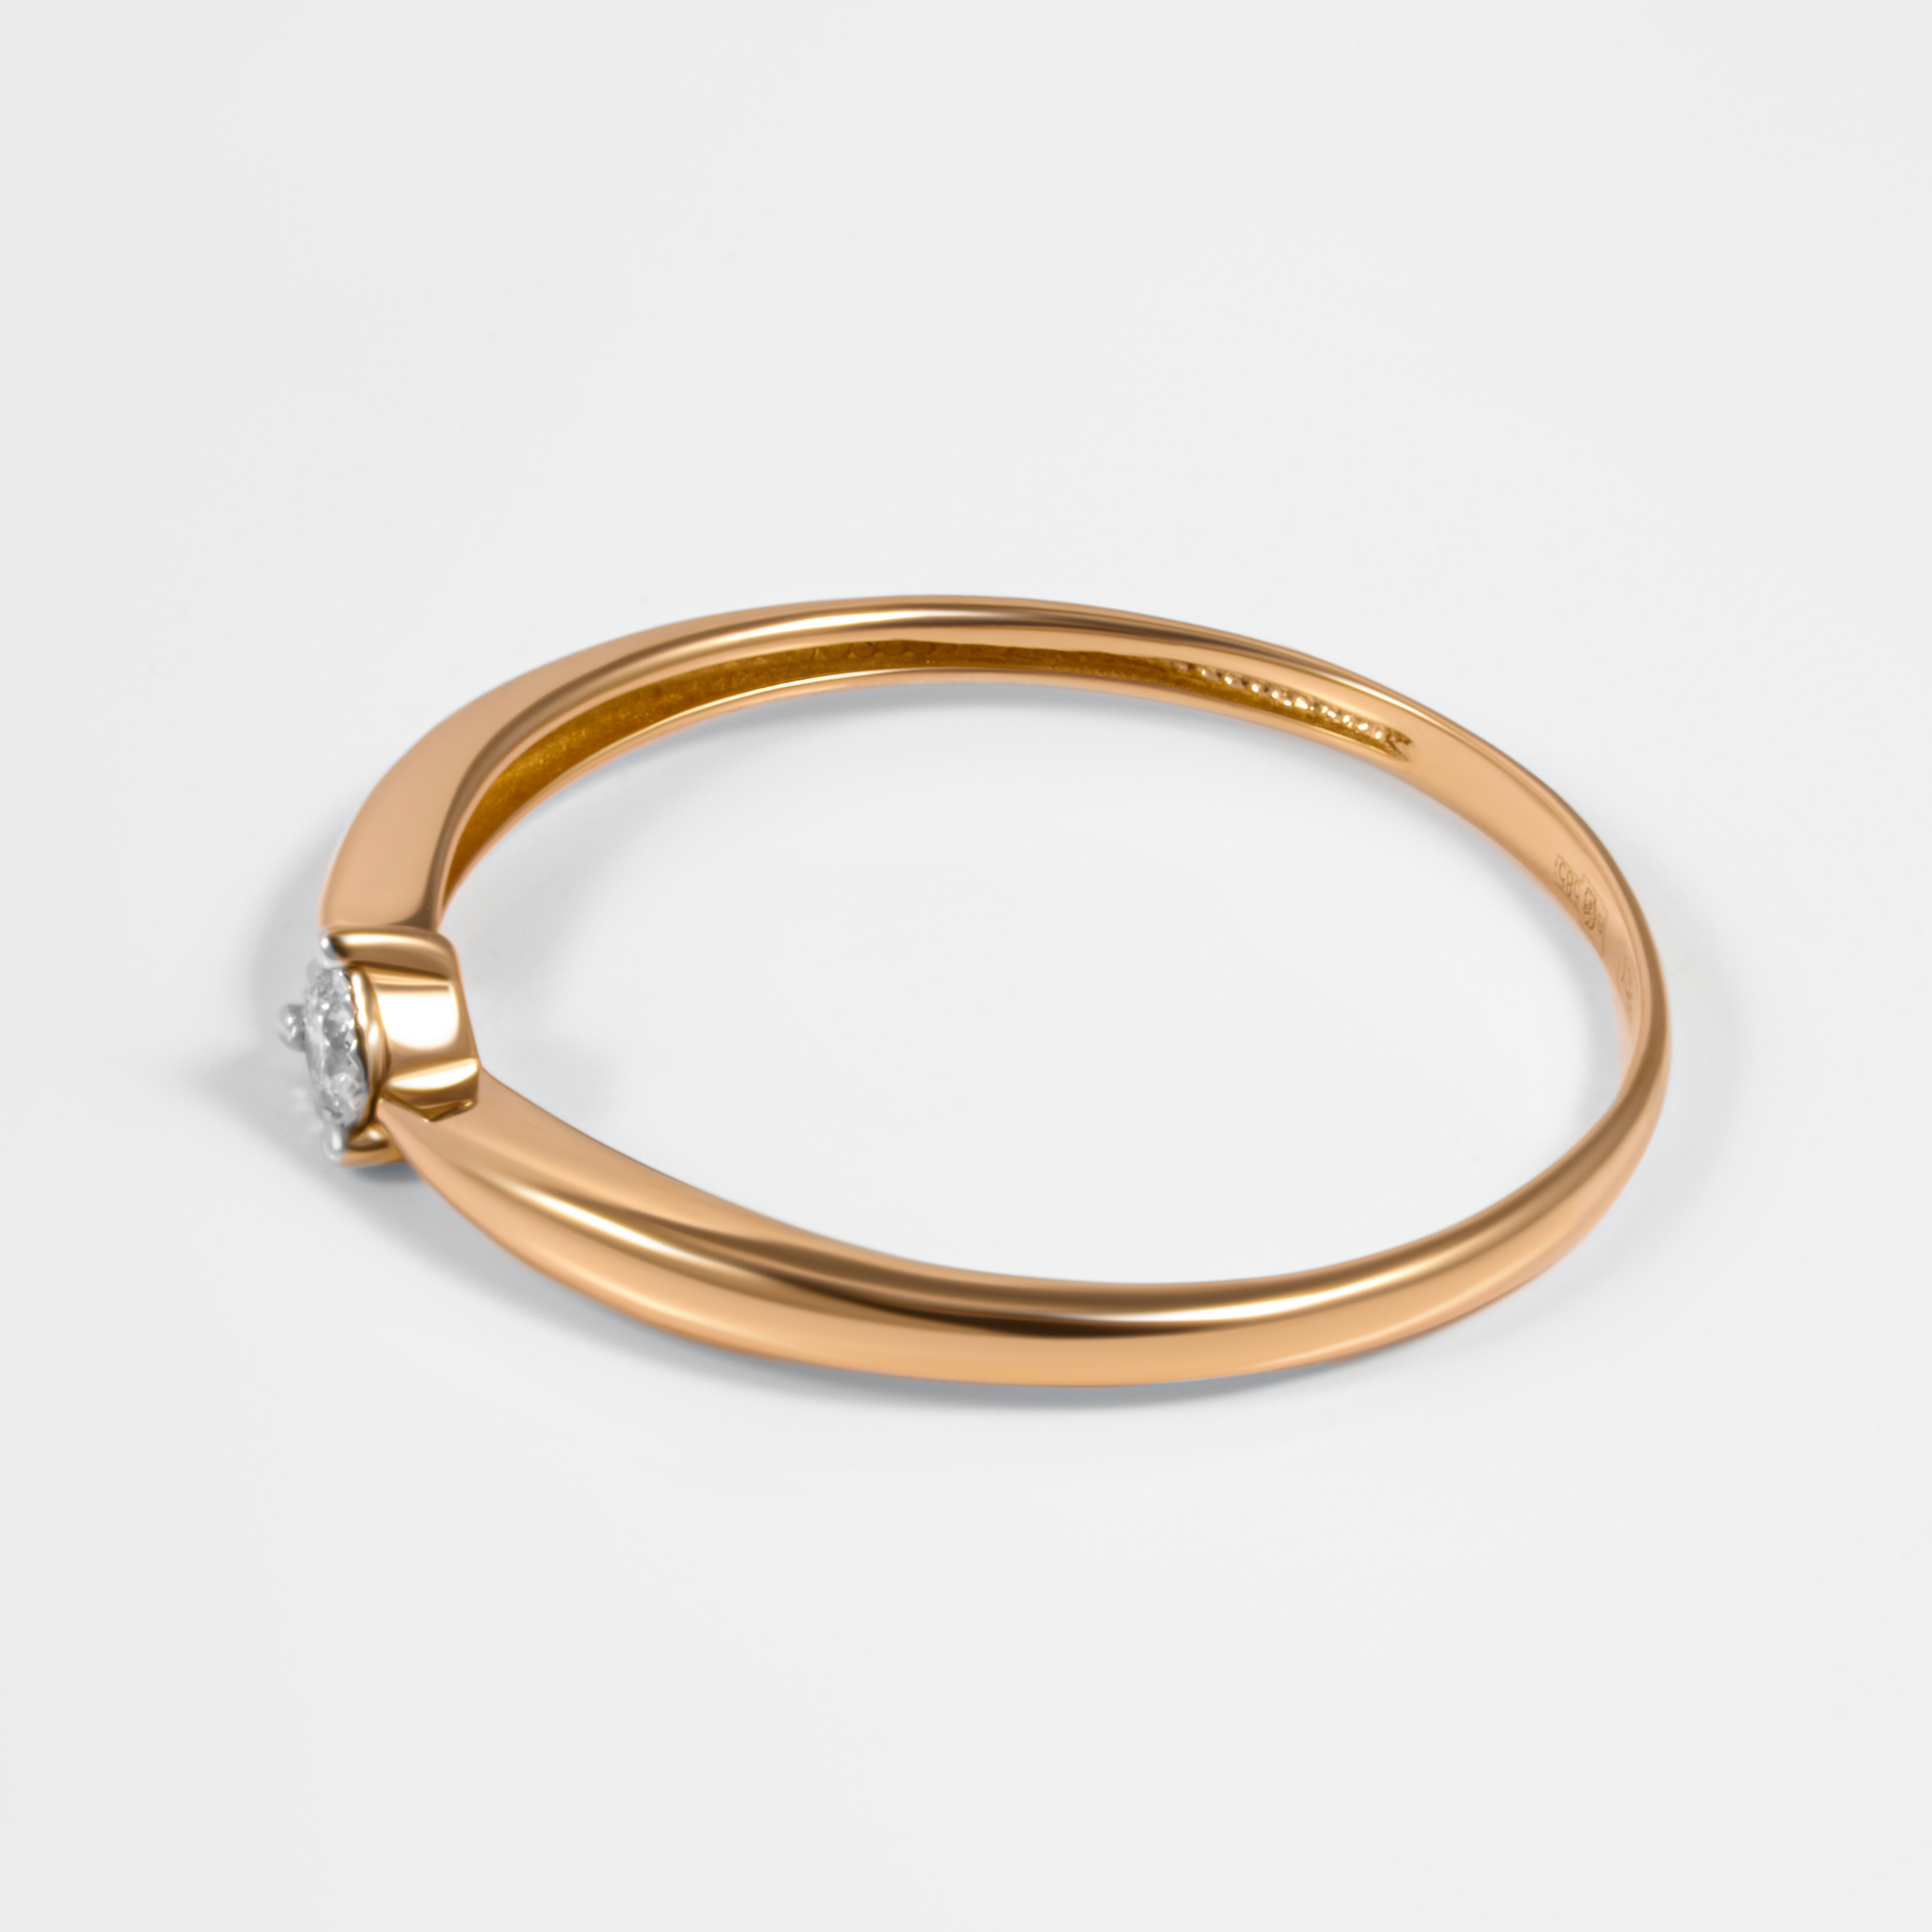 Золотое кольцо Григорьев даймонд из красного золота 585 пробы Э101-11-6030-11-00-21